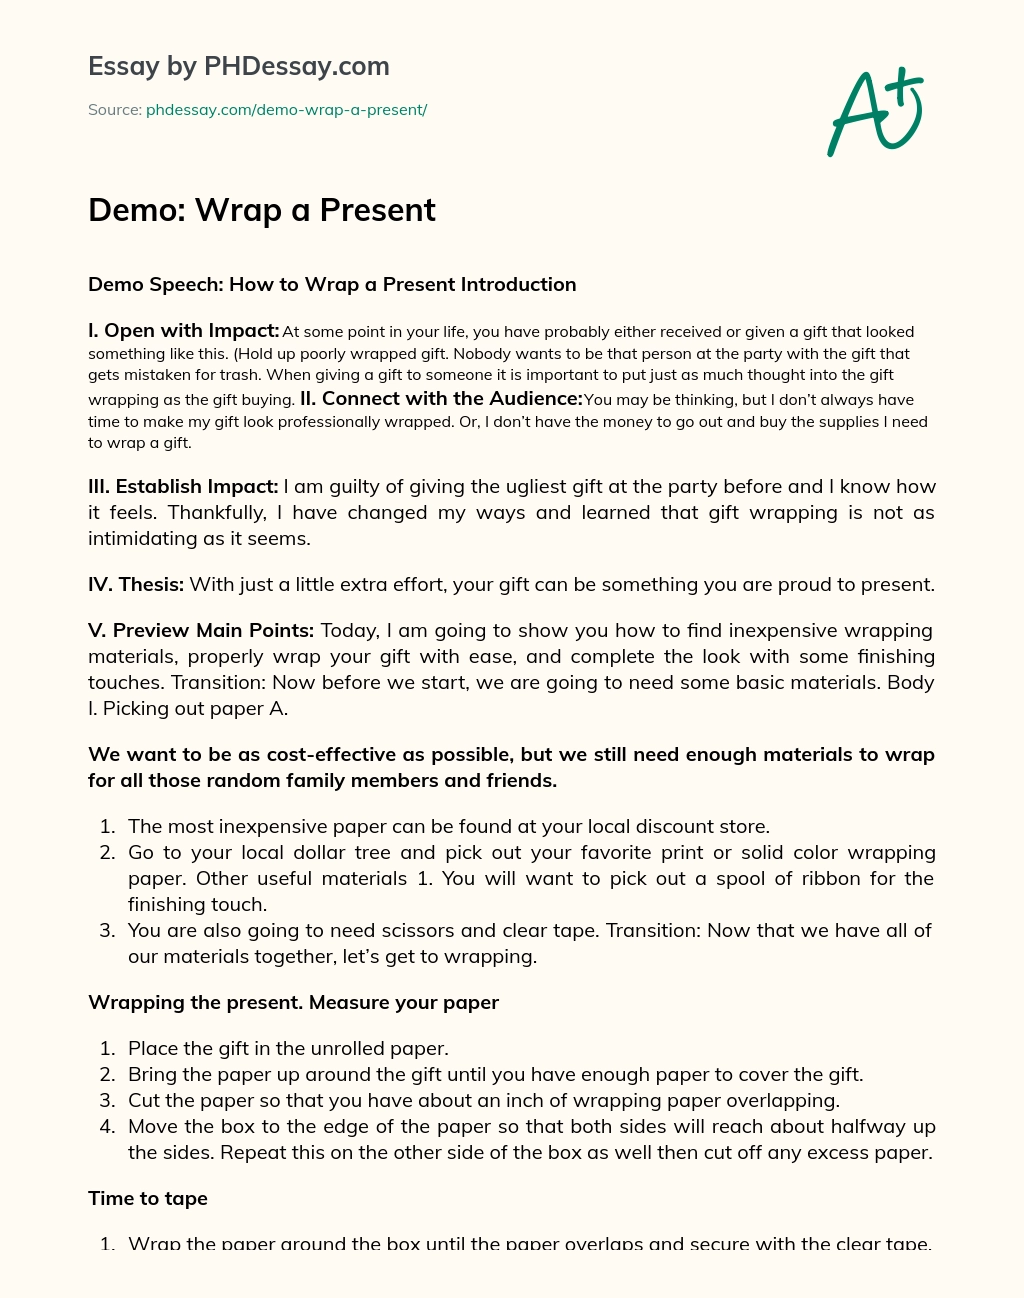 Demo: Wrap a Present essay